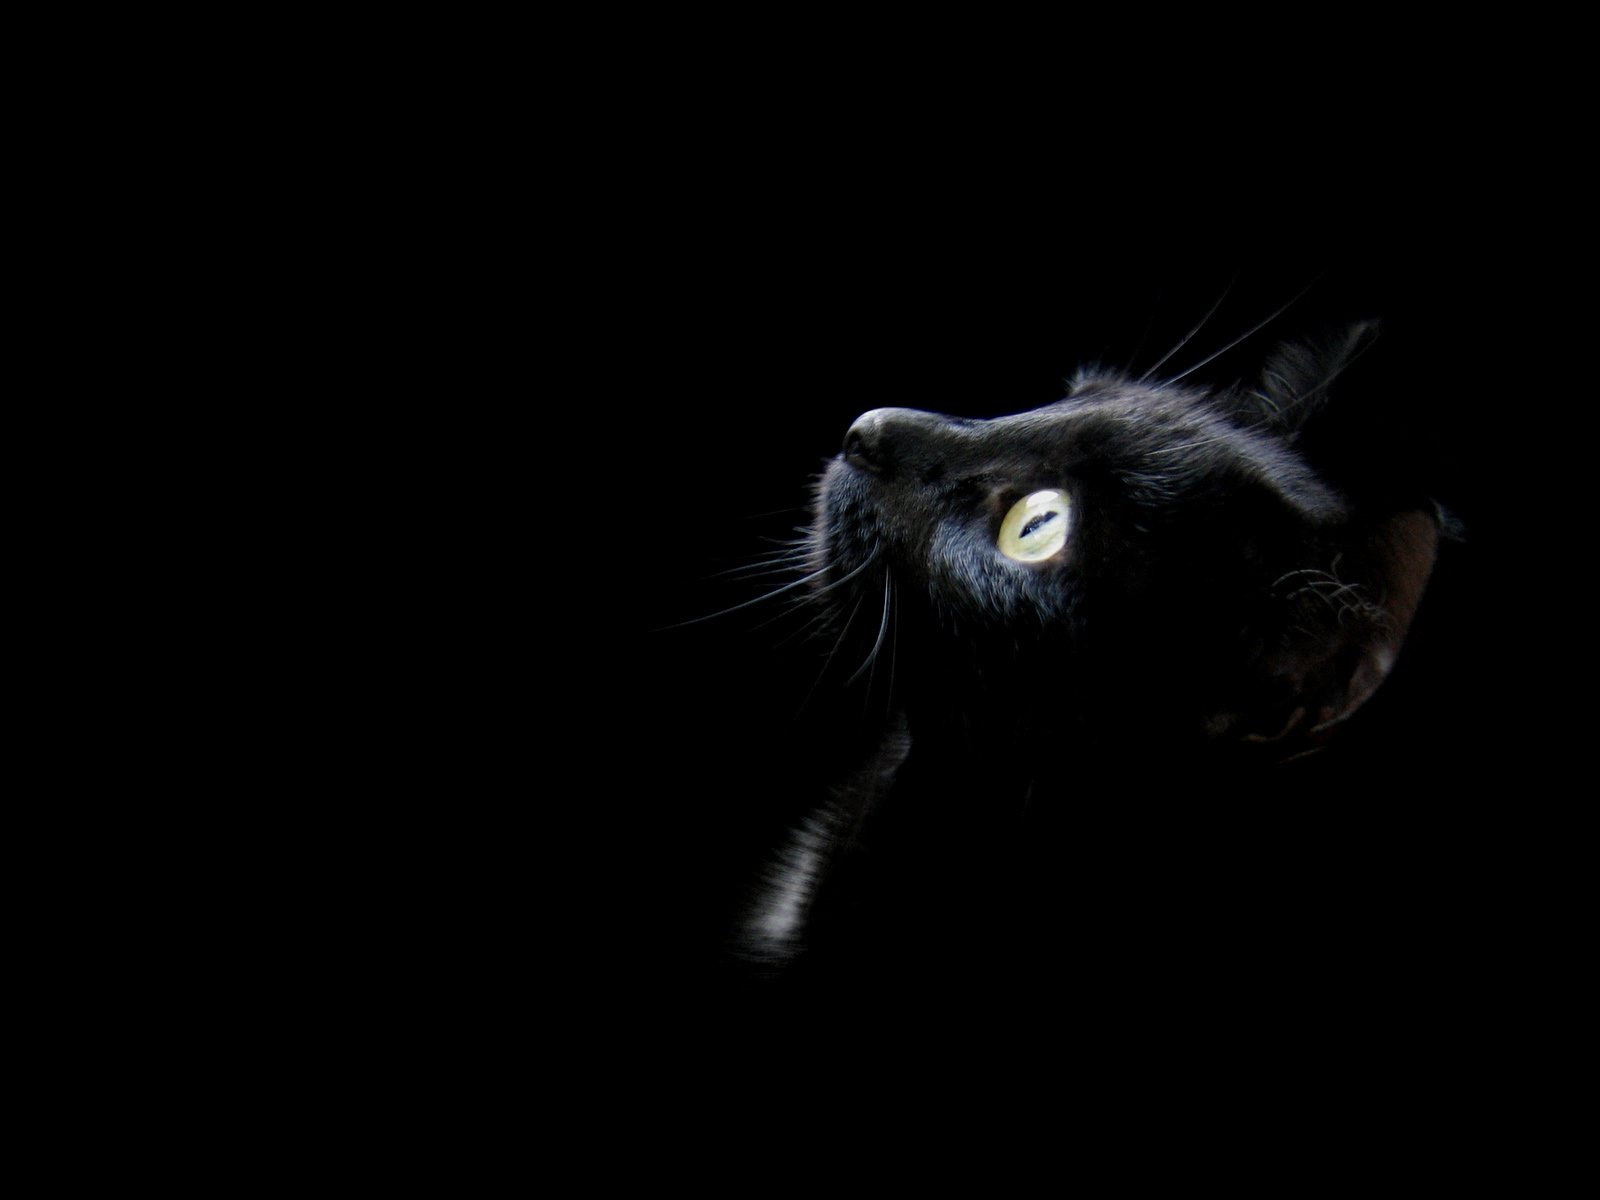 Заставка черный фон. Чёрный кот. Черные обои. Черное на черном фоне. Черная кошка на черном фоне.